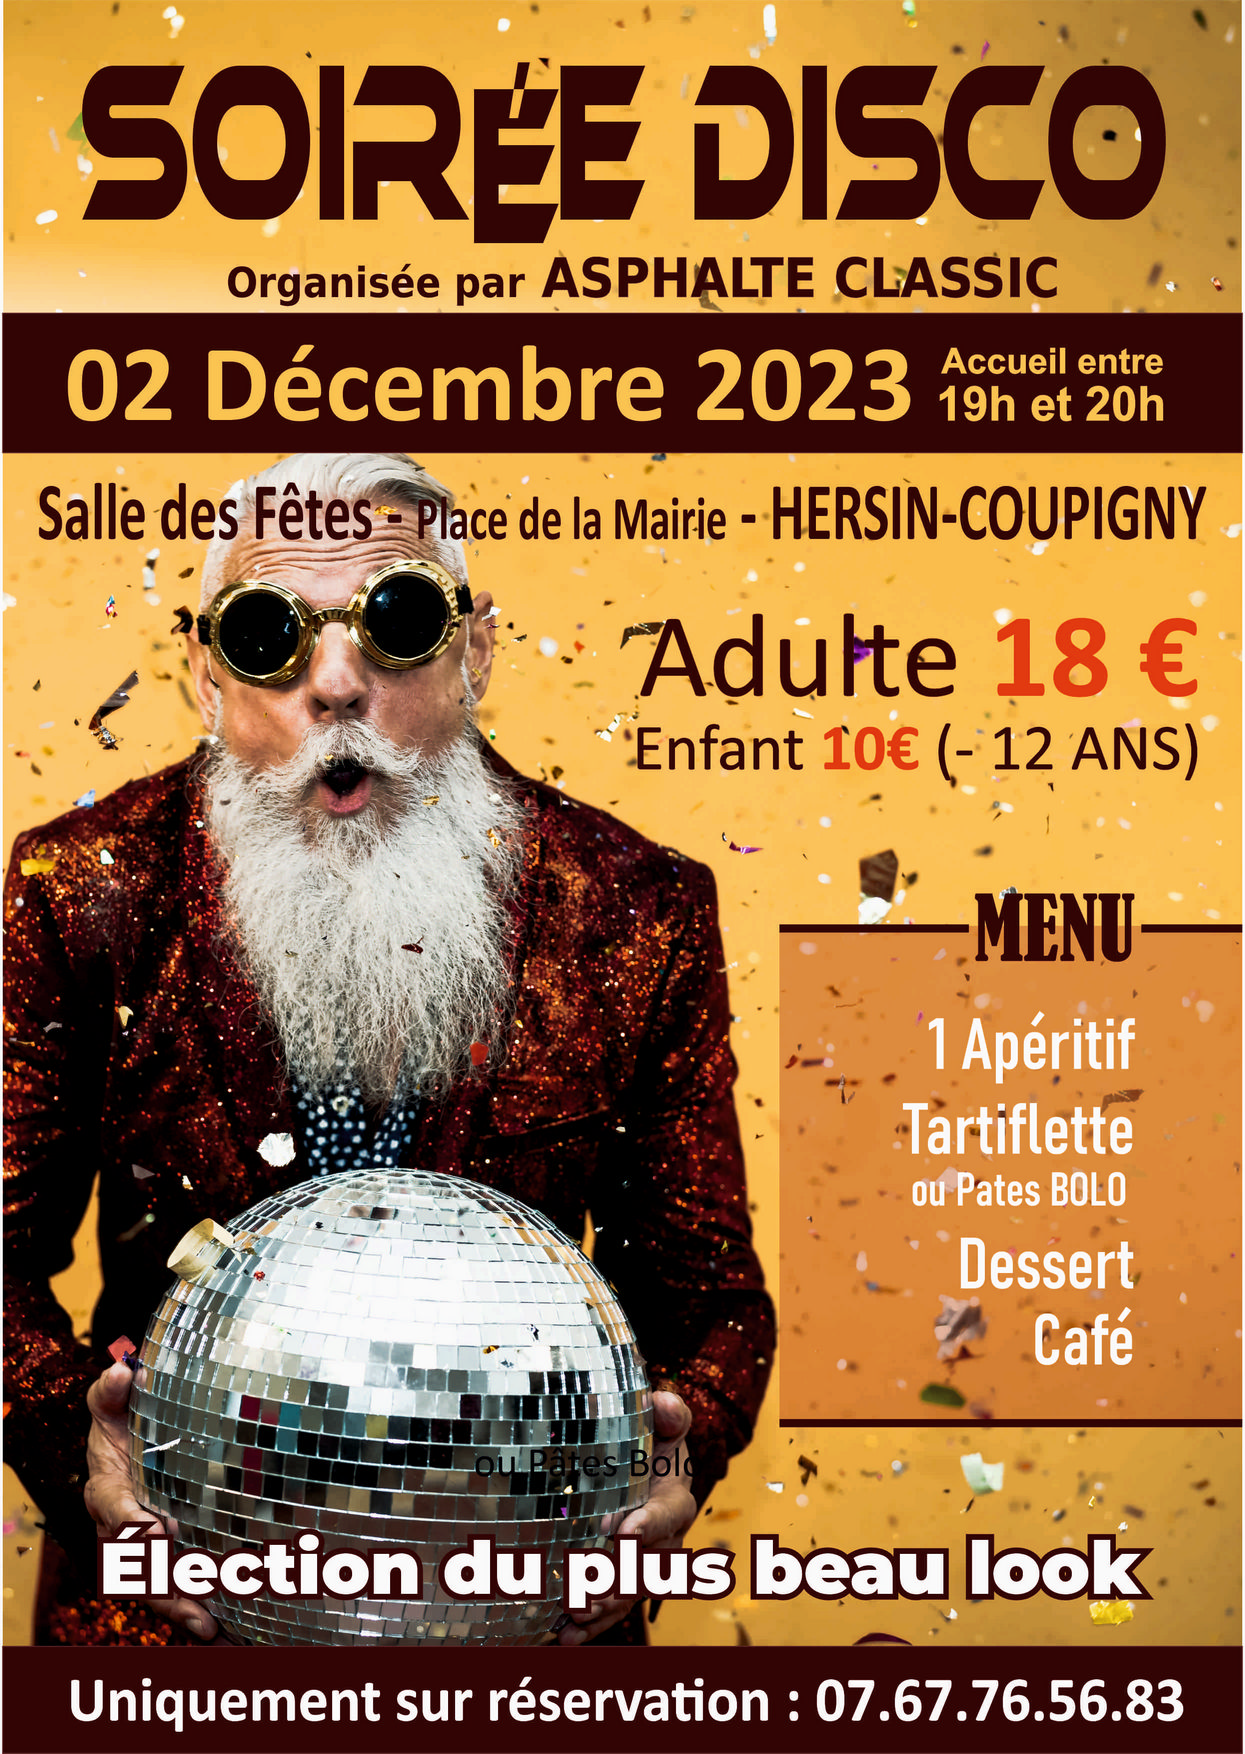 Soirée disco @ Salle des Fêtes | Hersin-Coupigny | Hauts-de-France | France